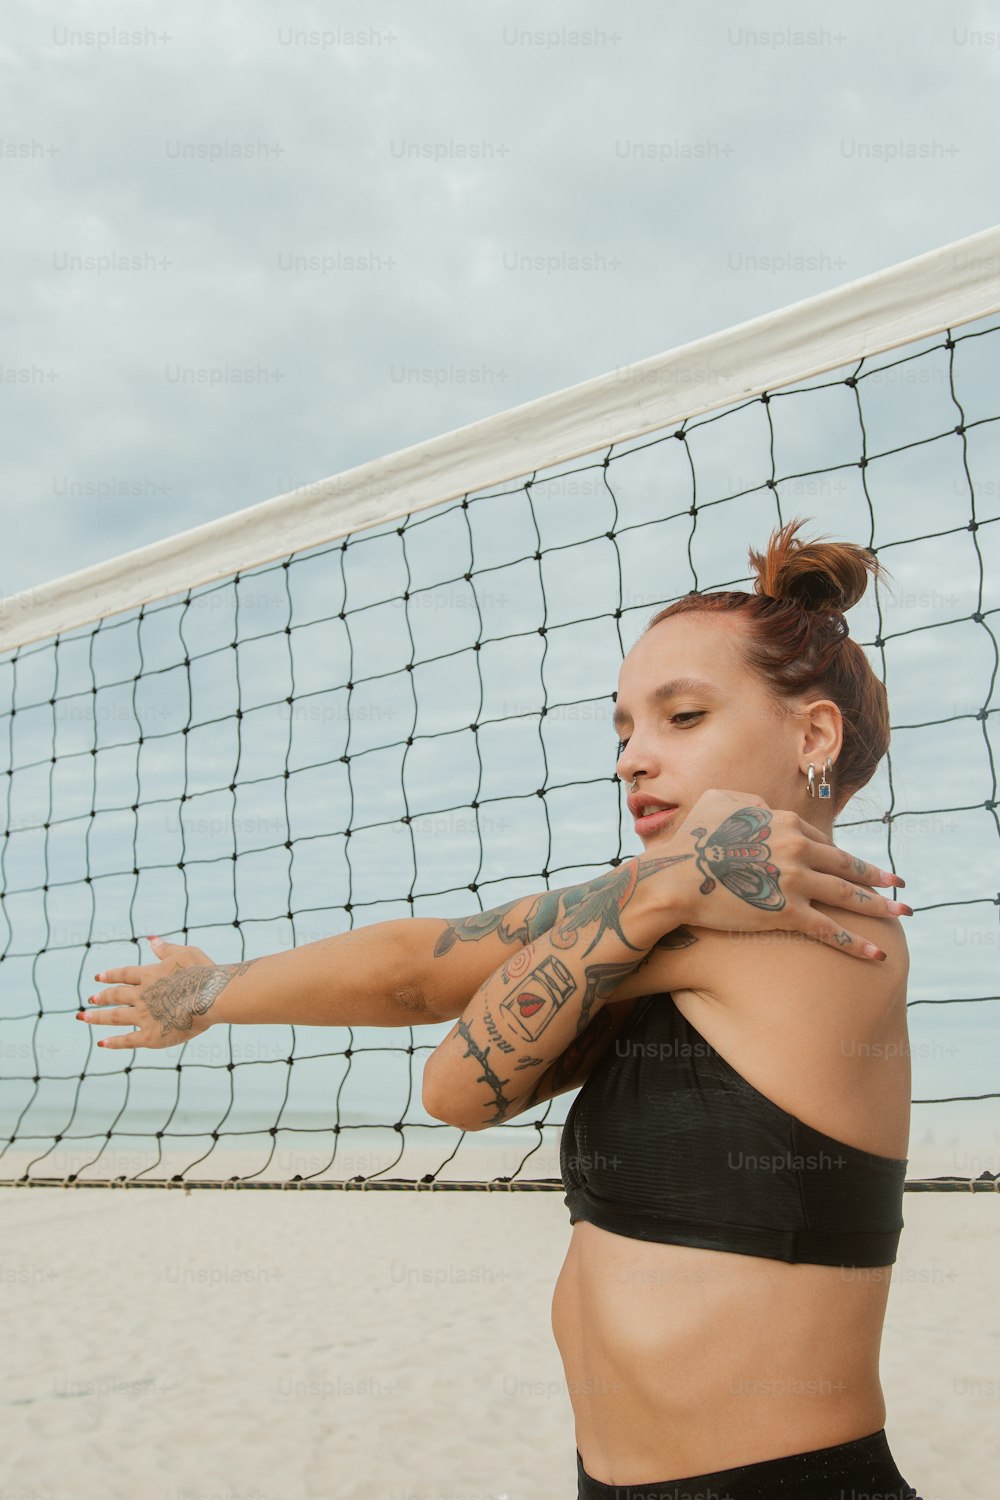 Una donna con tatuaggi sul braccio in piedi davanti a una rete da pallavolo